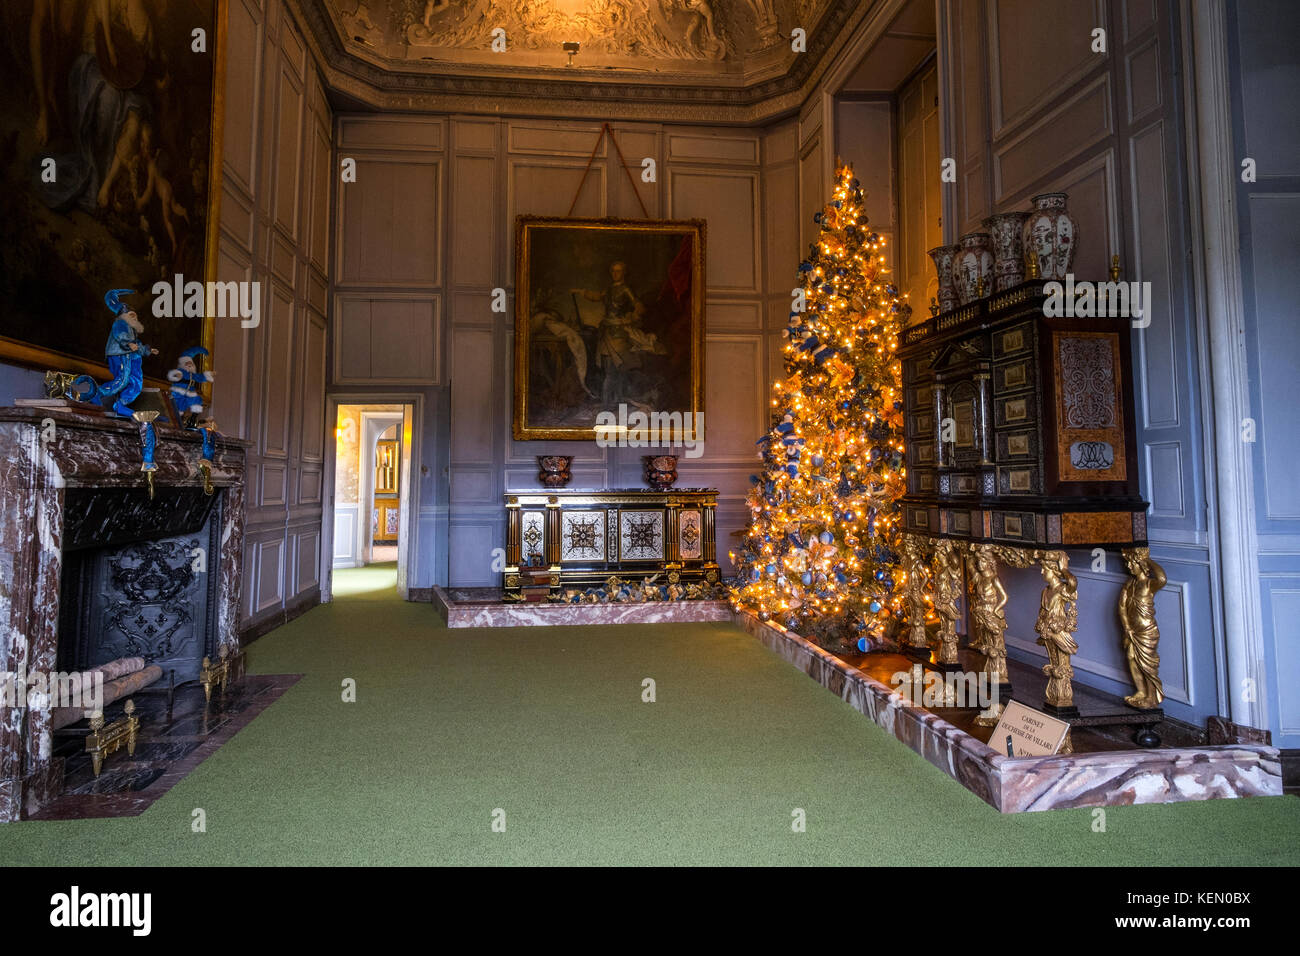 Christmas tree and decorations at Chateau de Vaux-le-Vicomte, Maincy, Paris Stock Photo